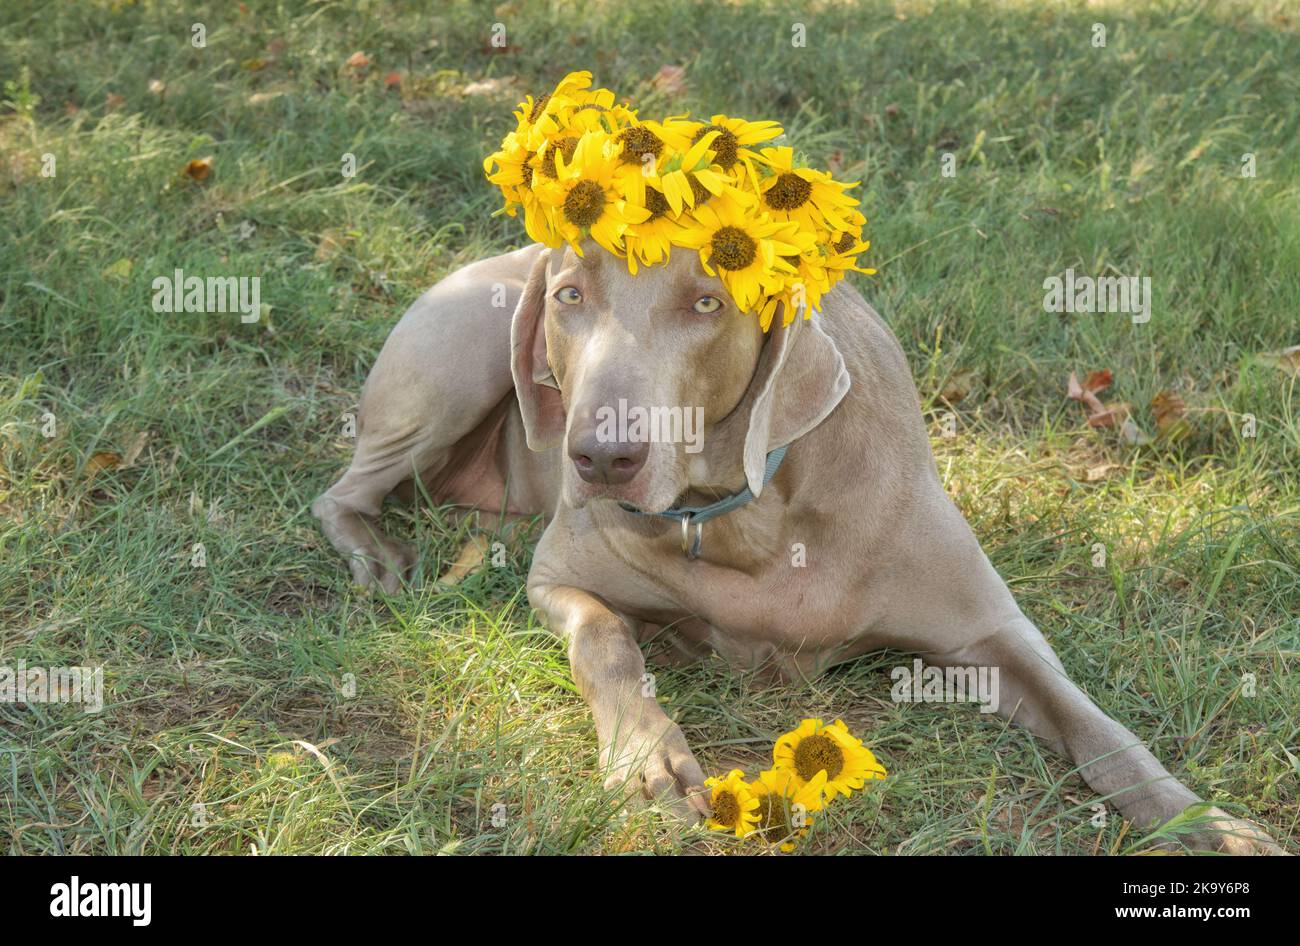 Magnifique chien Weimaraner allongé dans l'herbe, portant une couronne faite de tournesols Banque D'Images